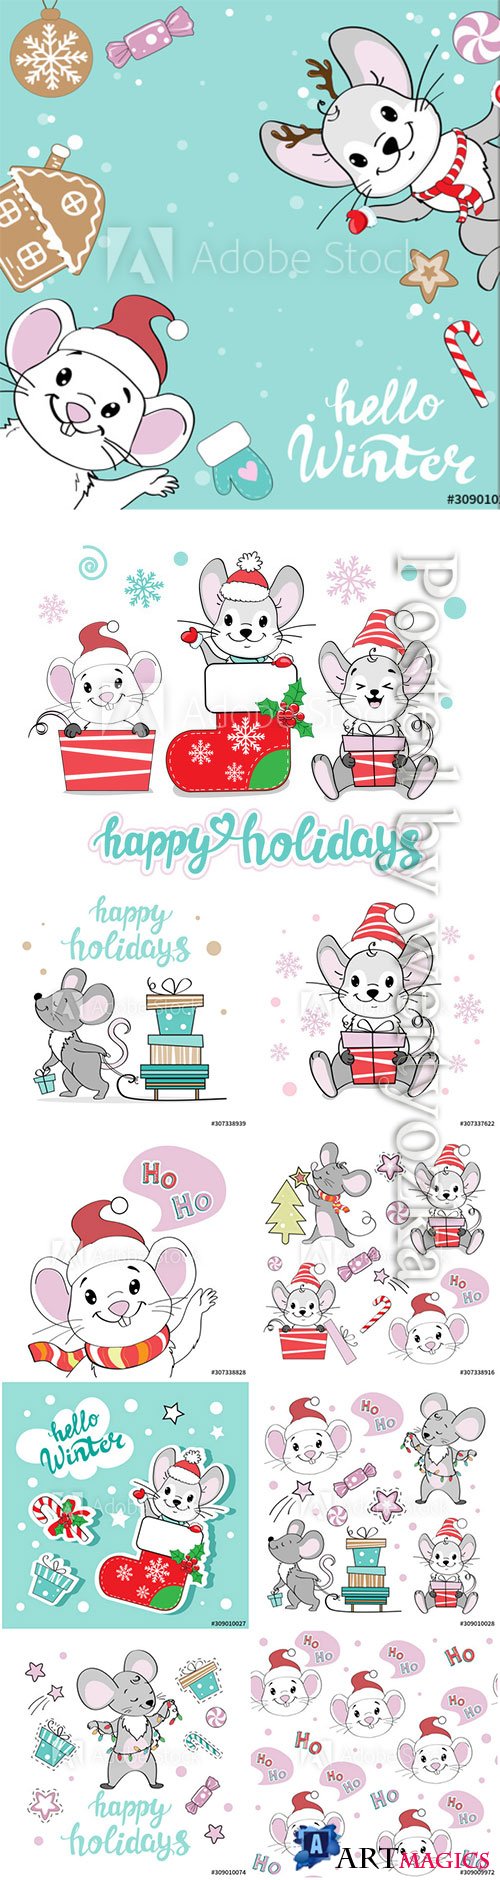 Christmas illustration set with Christmas mice on a 